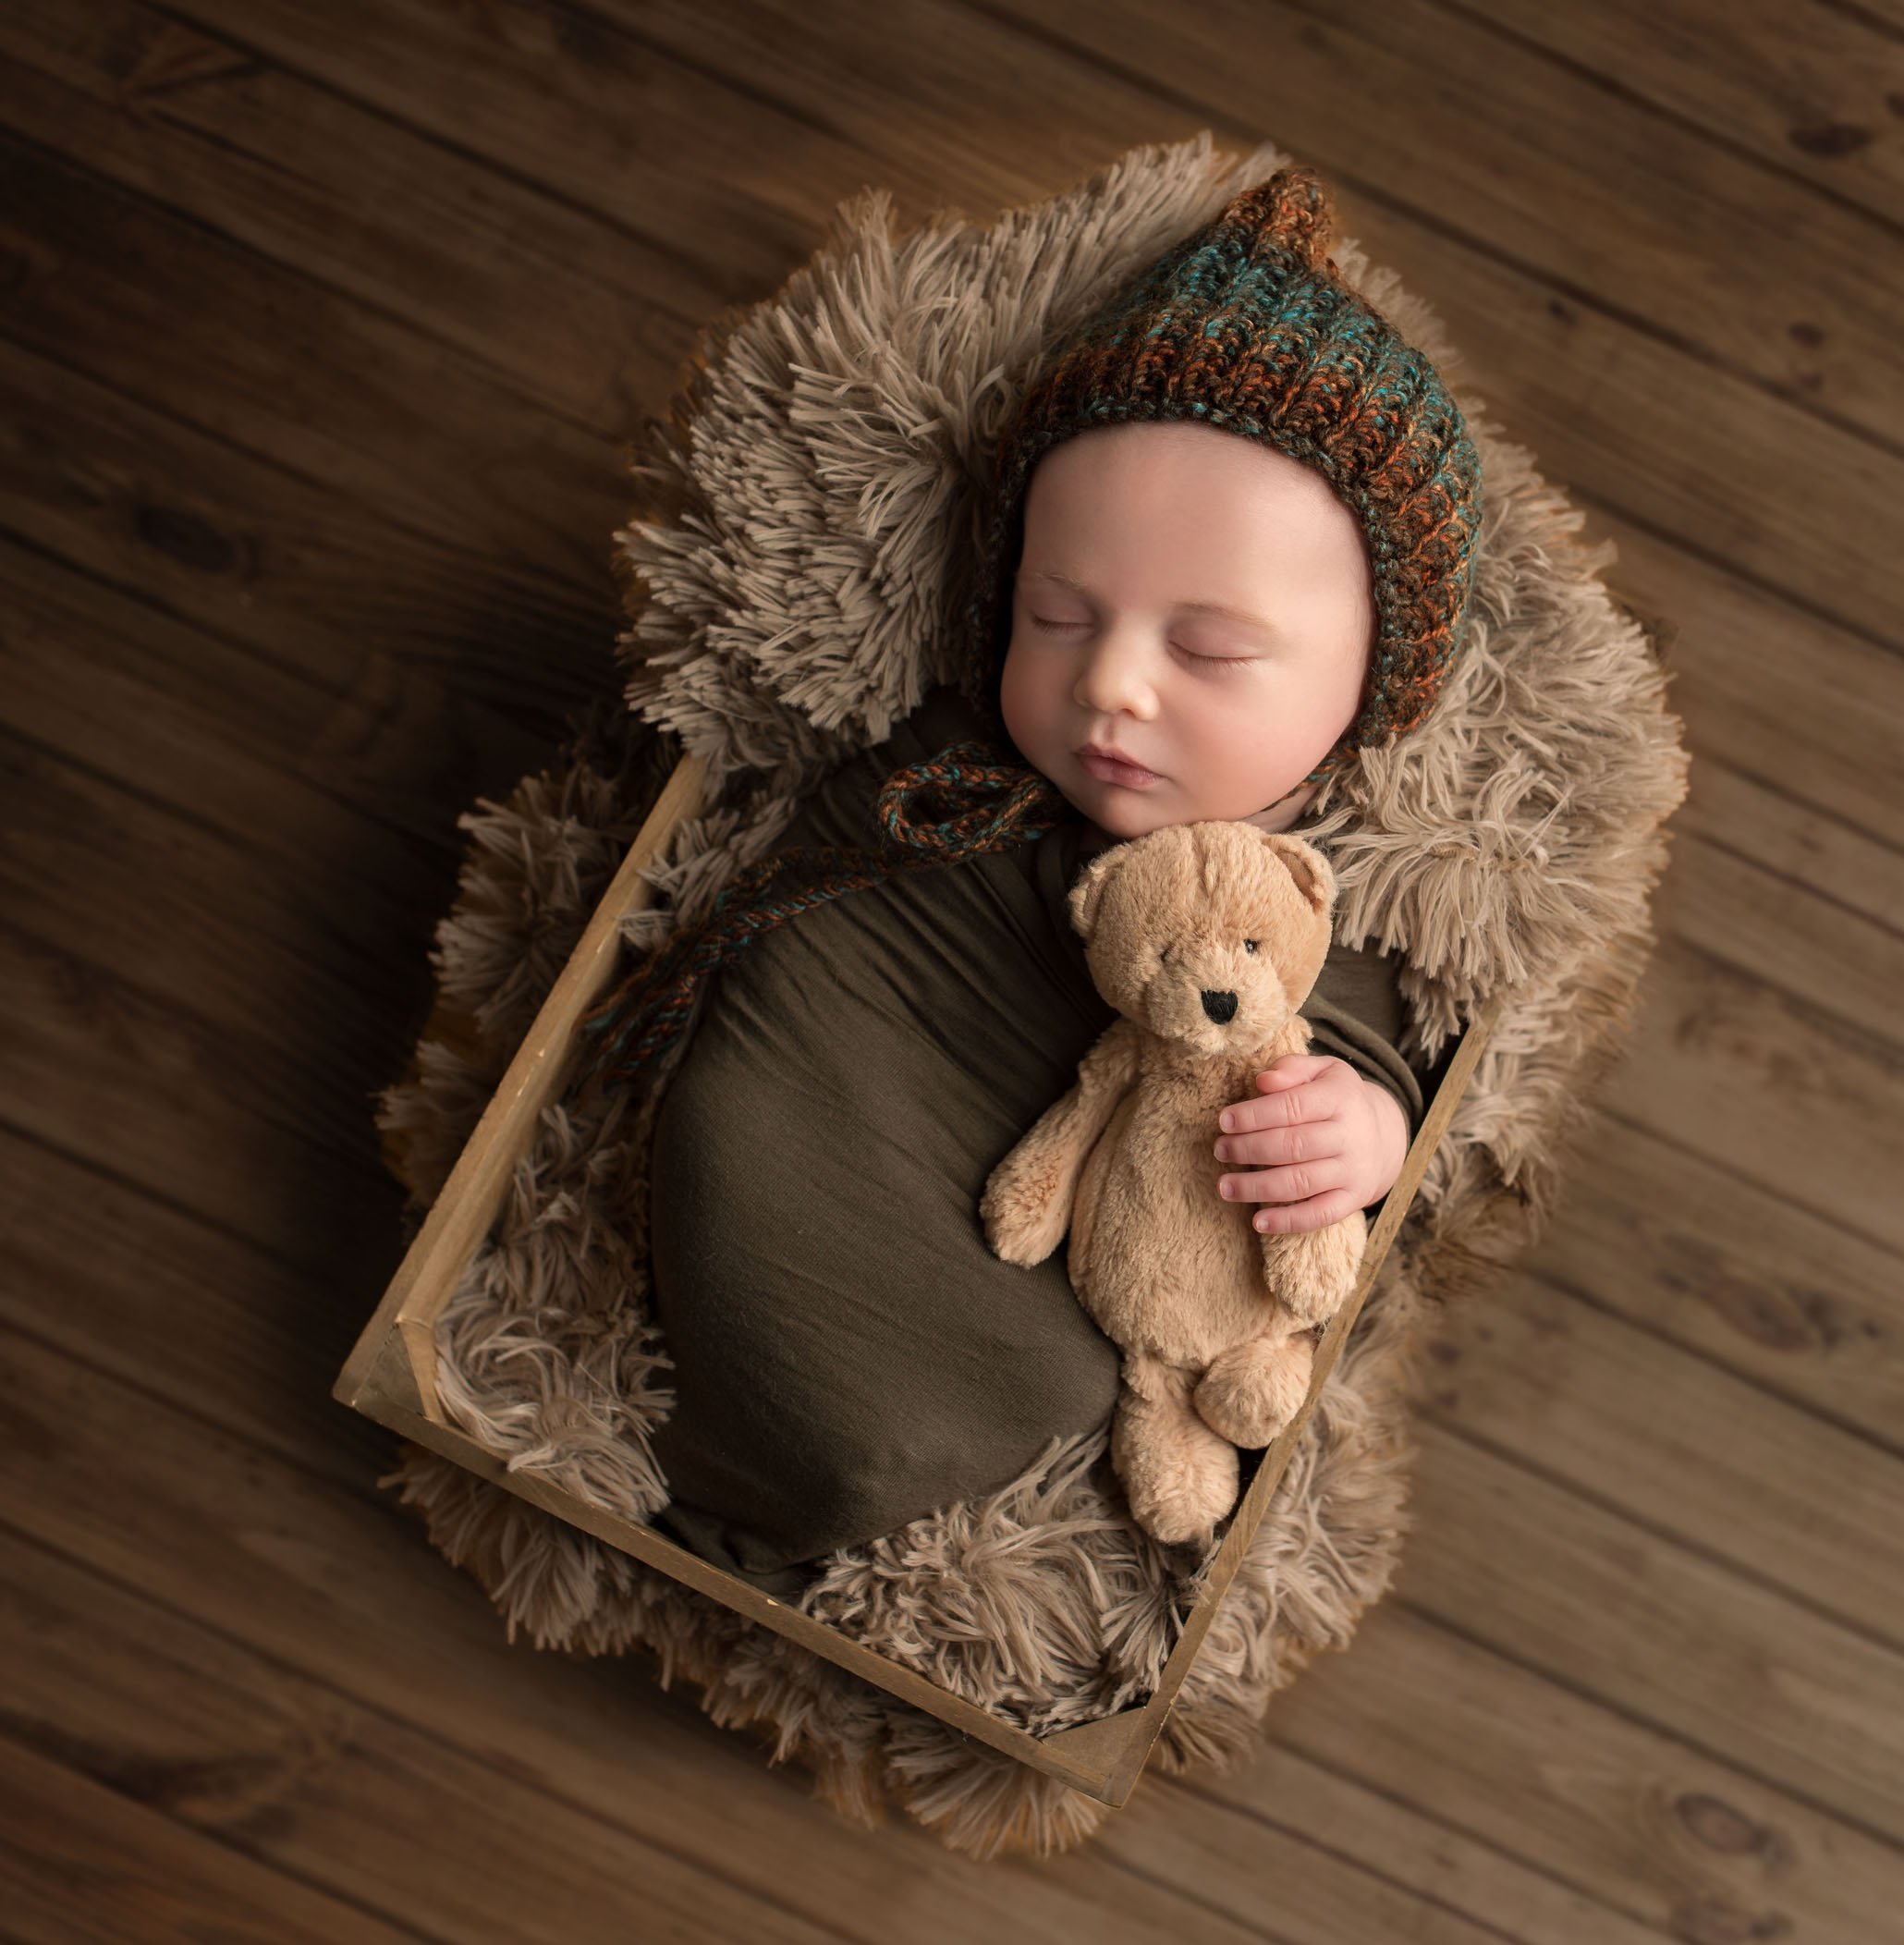 newborn baby boy sleeping in crate with teddy bear